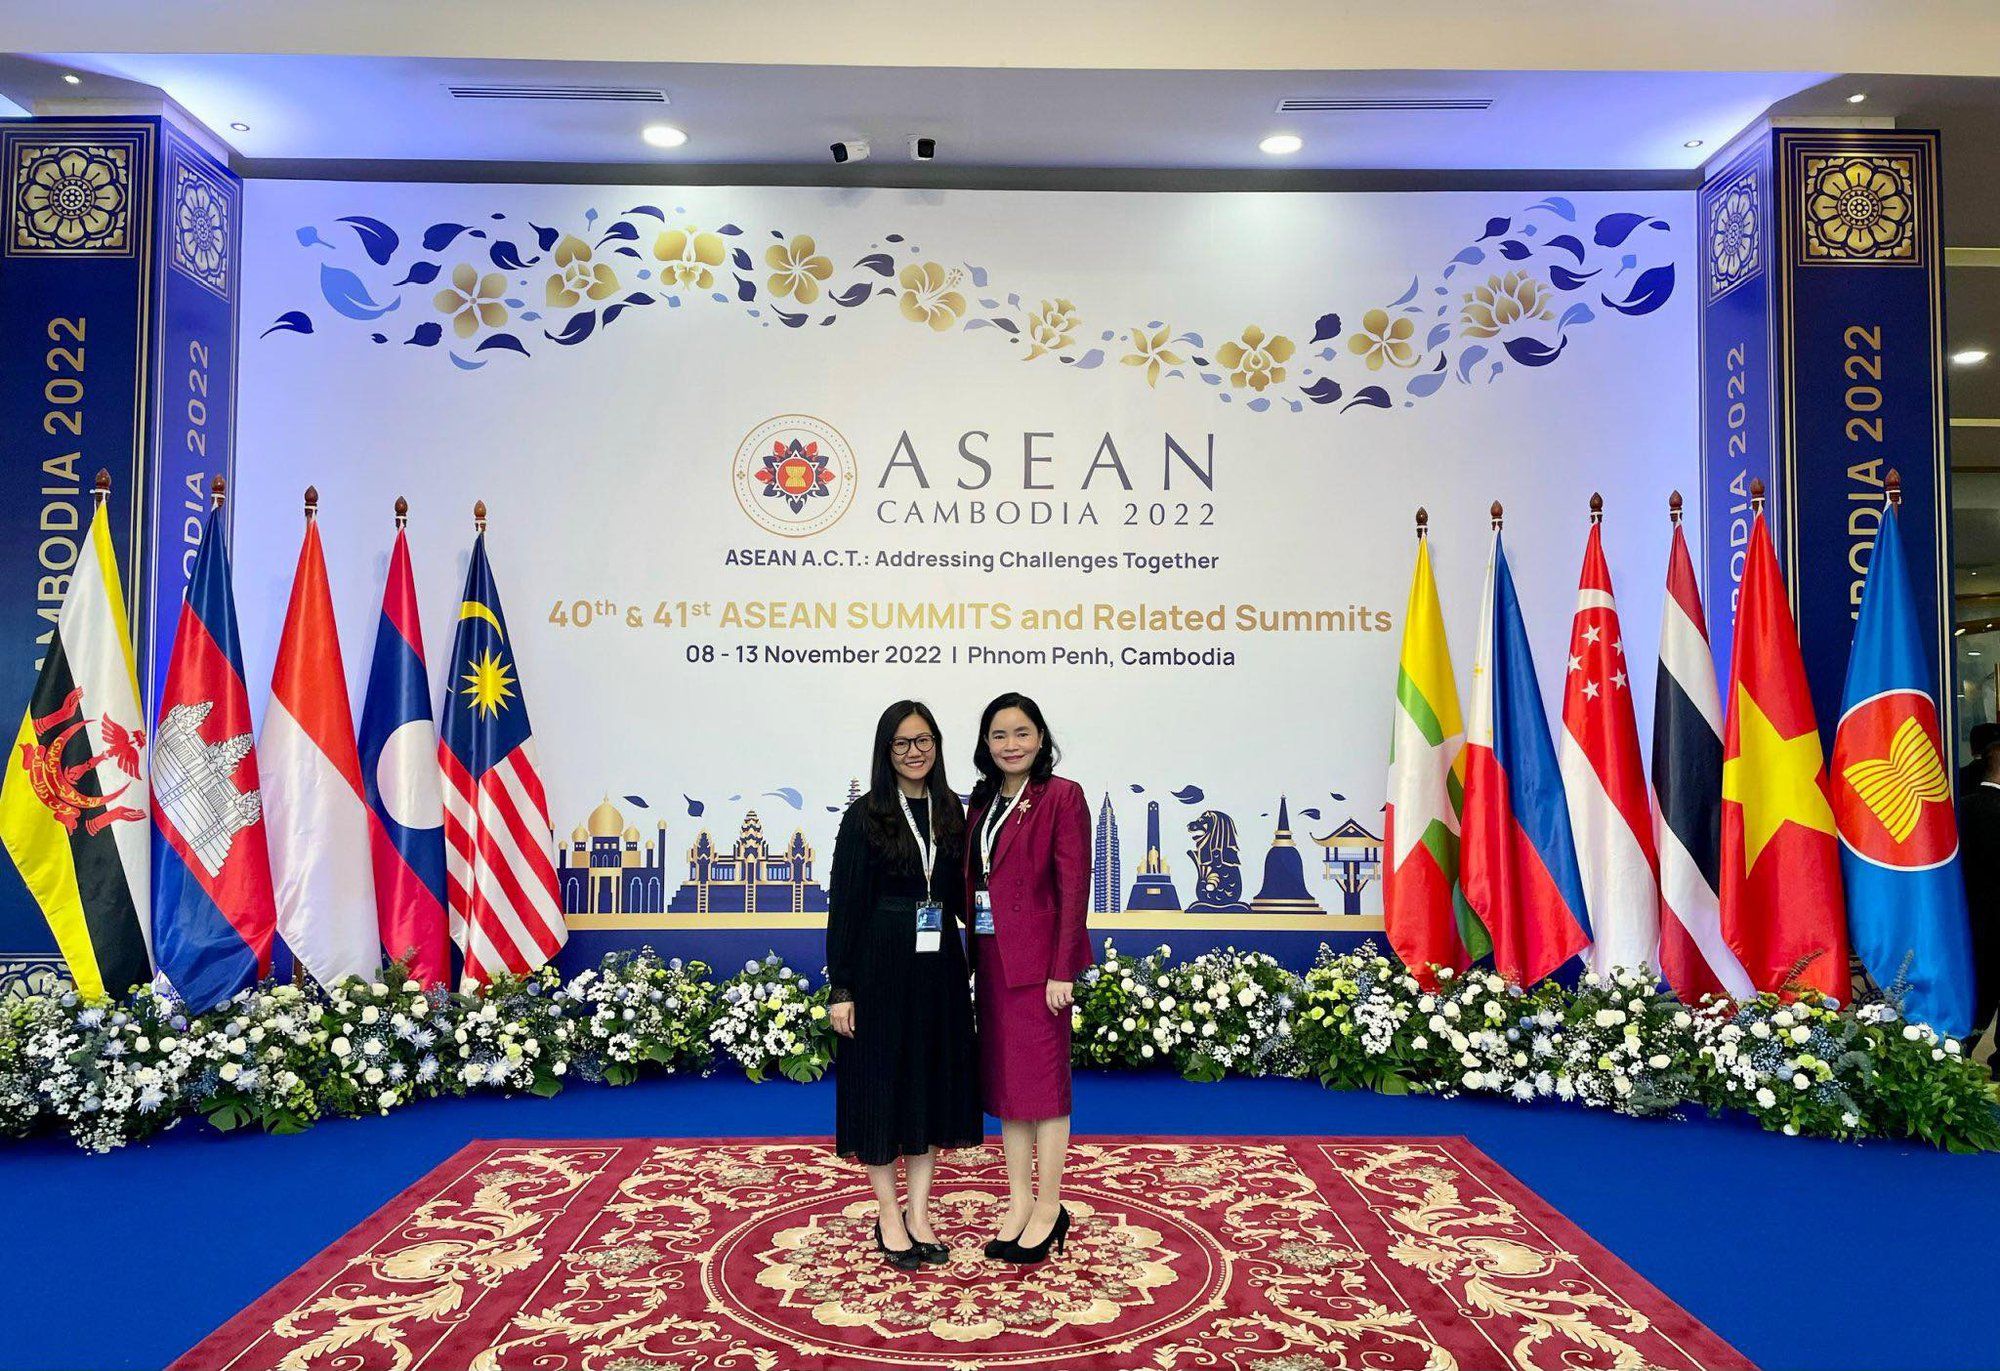 Tiến độ triển khai Tầm nhìn Cộng đồng ASEAN 2025 trên cả 3 trụ cột đạt nhiều kết quả khả quan - Ảnh 5.